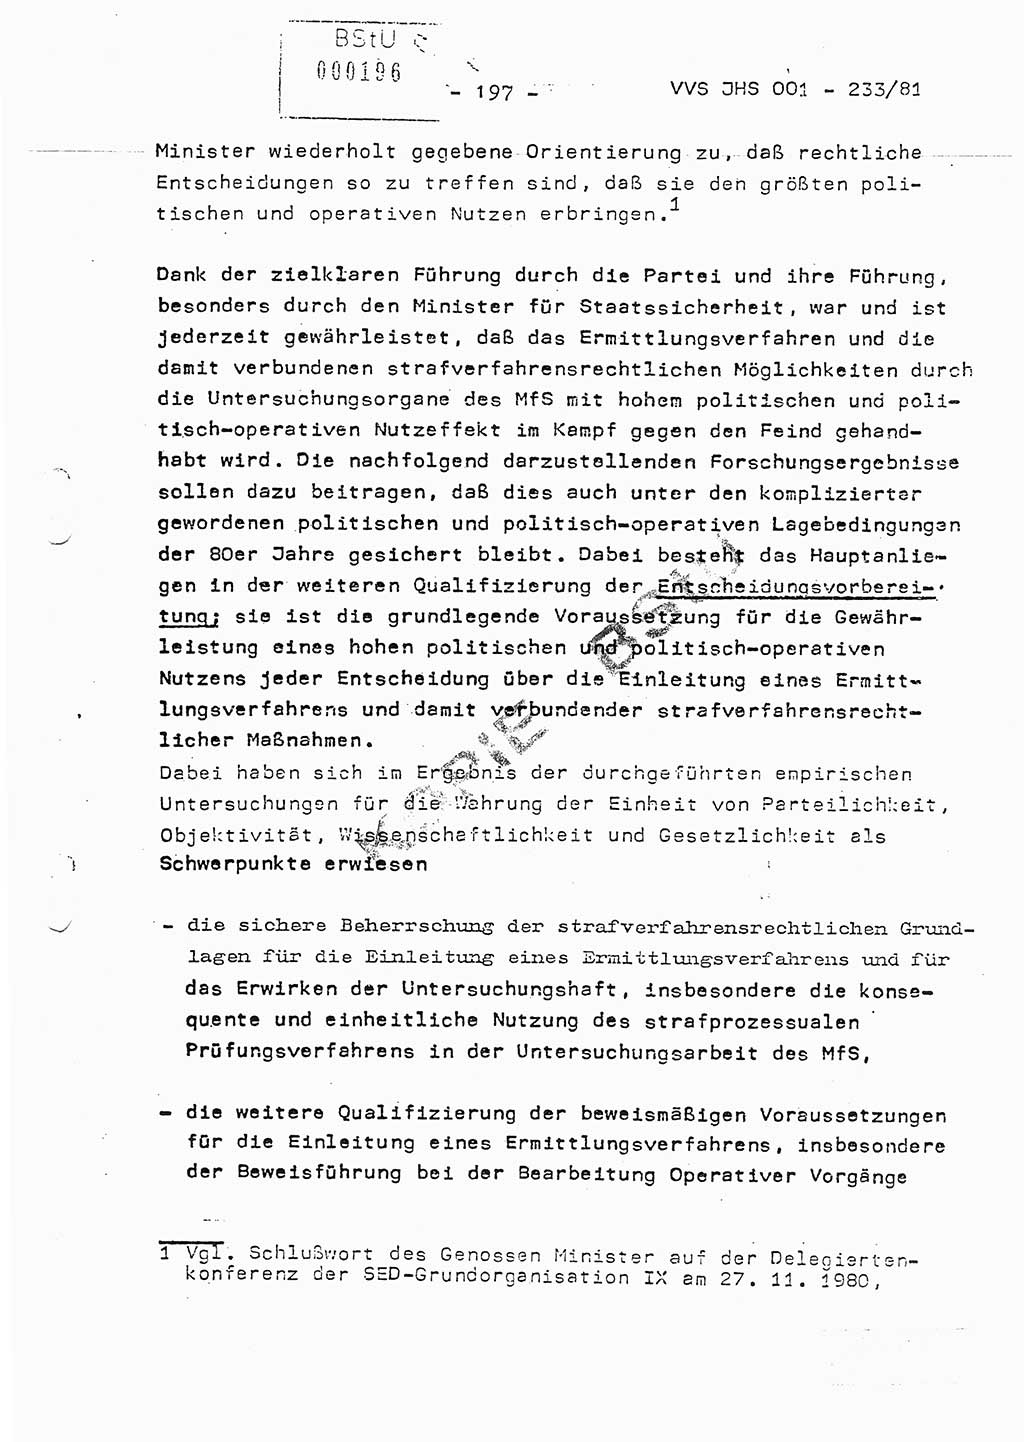 Dissertation Oberstleutnant Horst Zank (JHS), Oberstleutnant Dr. Karl-Heinz Knoblauch (JHS), Oberstleutnant Gustav-Adolf Kowalewski (HA Ⅸ), Oberstleutnant Wolfgang Plötner (HA Ⅸ), Ministerium für Staatssicherheit (MfS) [Deutsche Demokratische Republik (DDR)], Juristische Hochschule (JHS), Vertrauliche Verschlußsache (VVS) o001-233/81, Potsdam 1981, Blatt 197 (Diss. MfS DDR JHS VVS o001-233/81 1981, Bl. 197)